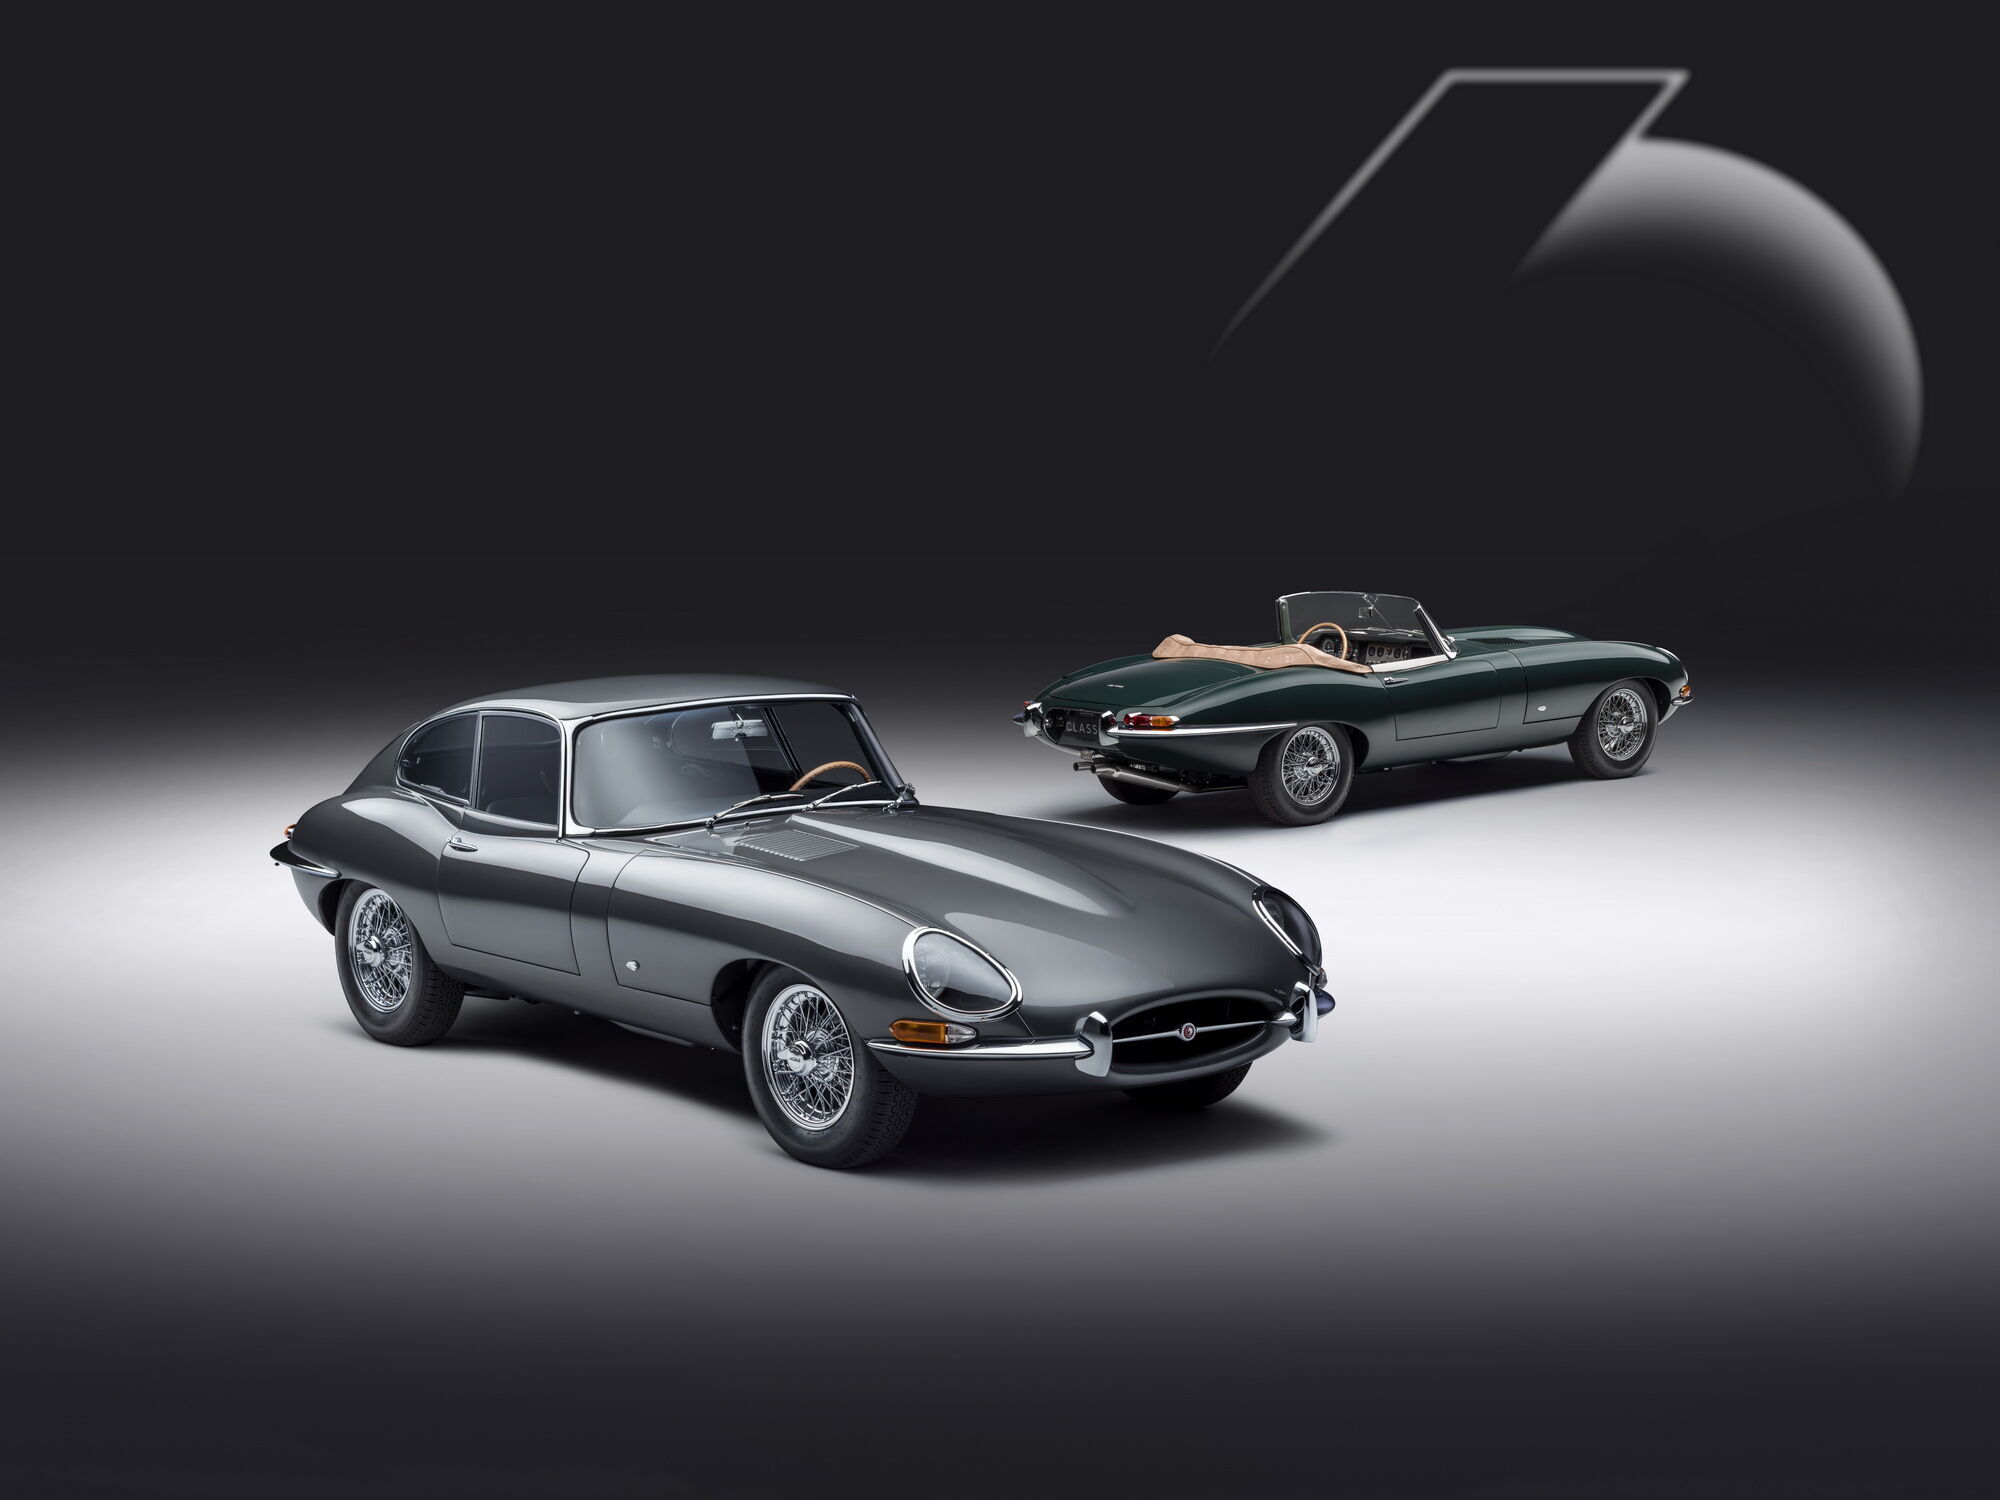 Підрозділ Jaguar Classic провів реставрацію 6 купе та 6 родстерів E-type відповідно до оригінальних зразків моделей, презентованих 60 років тому